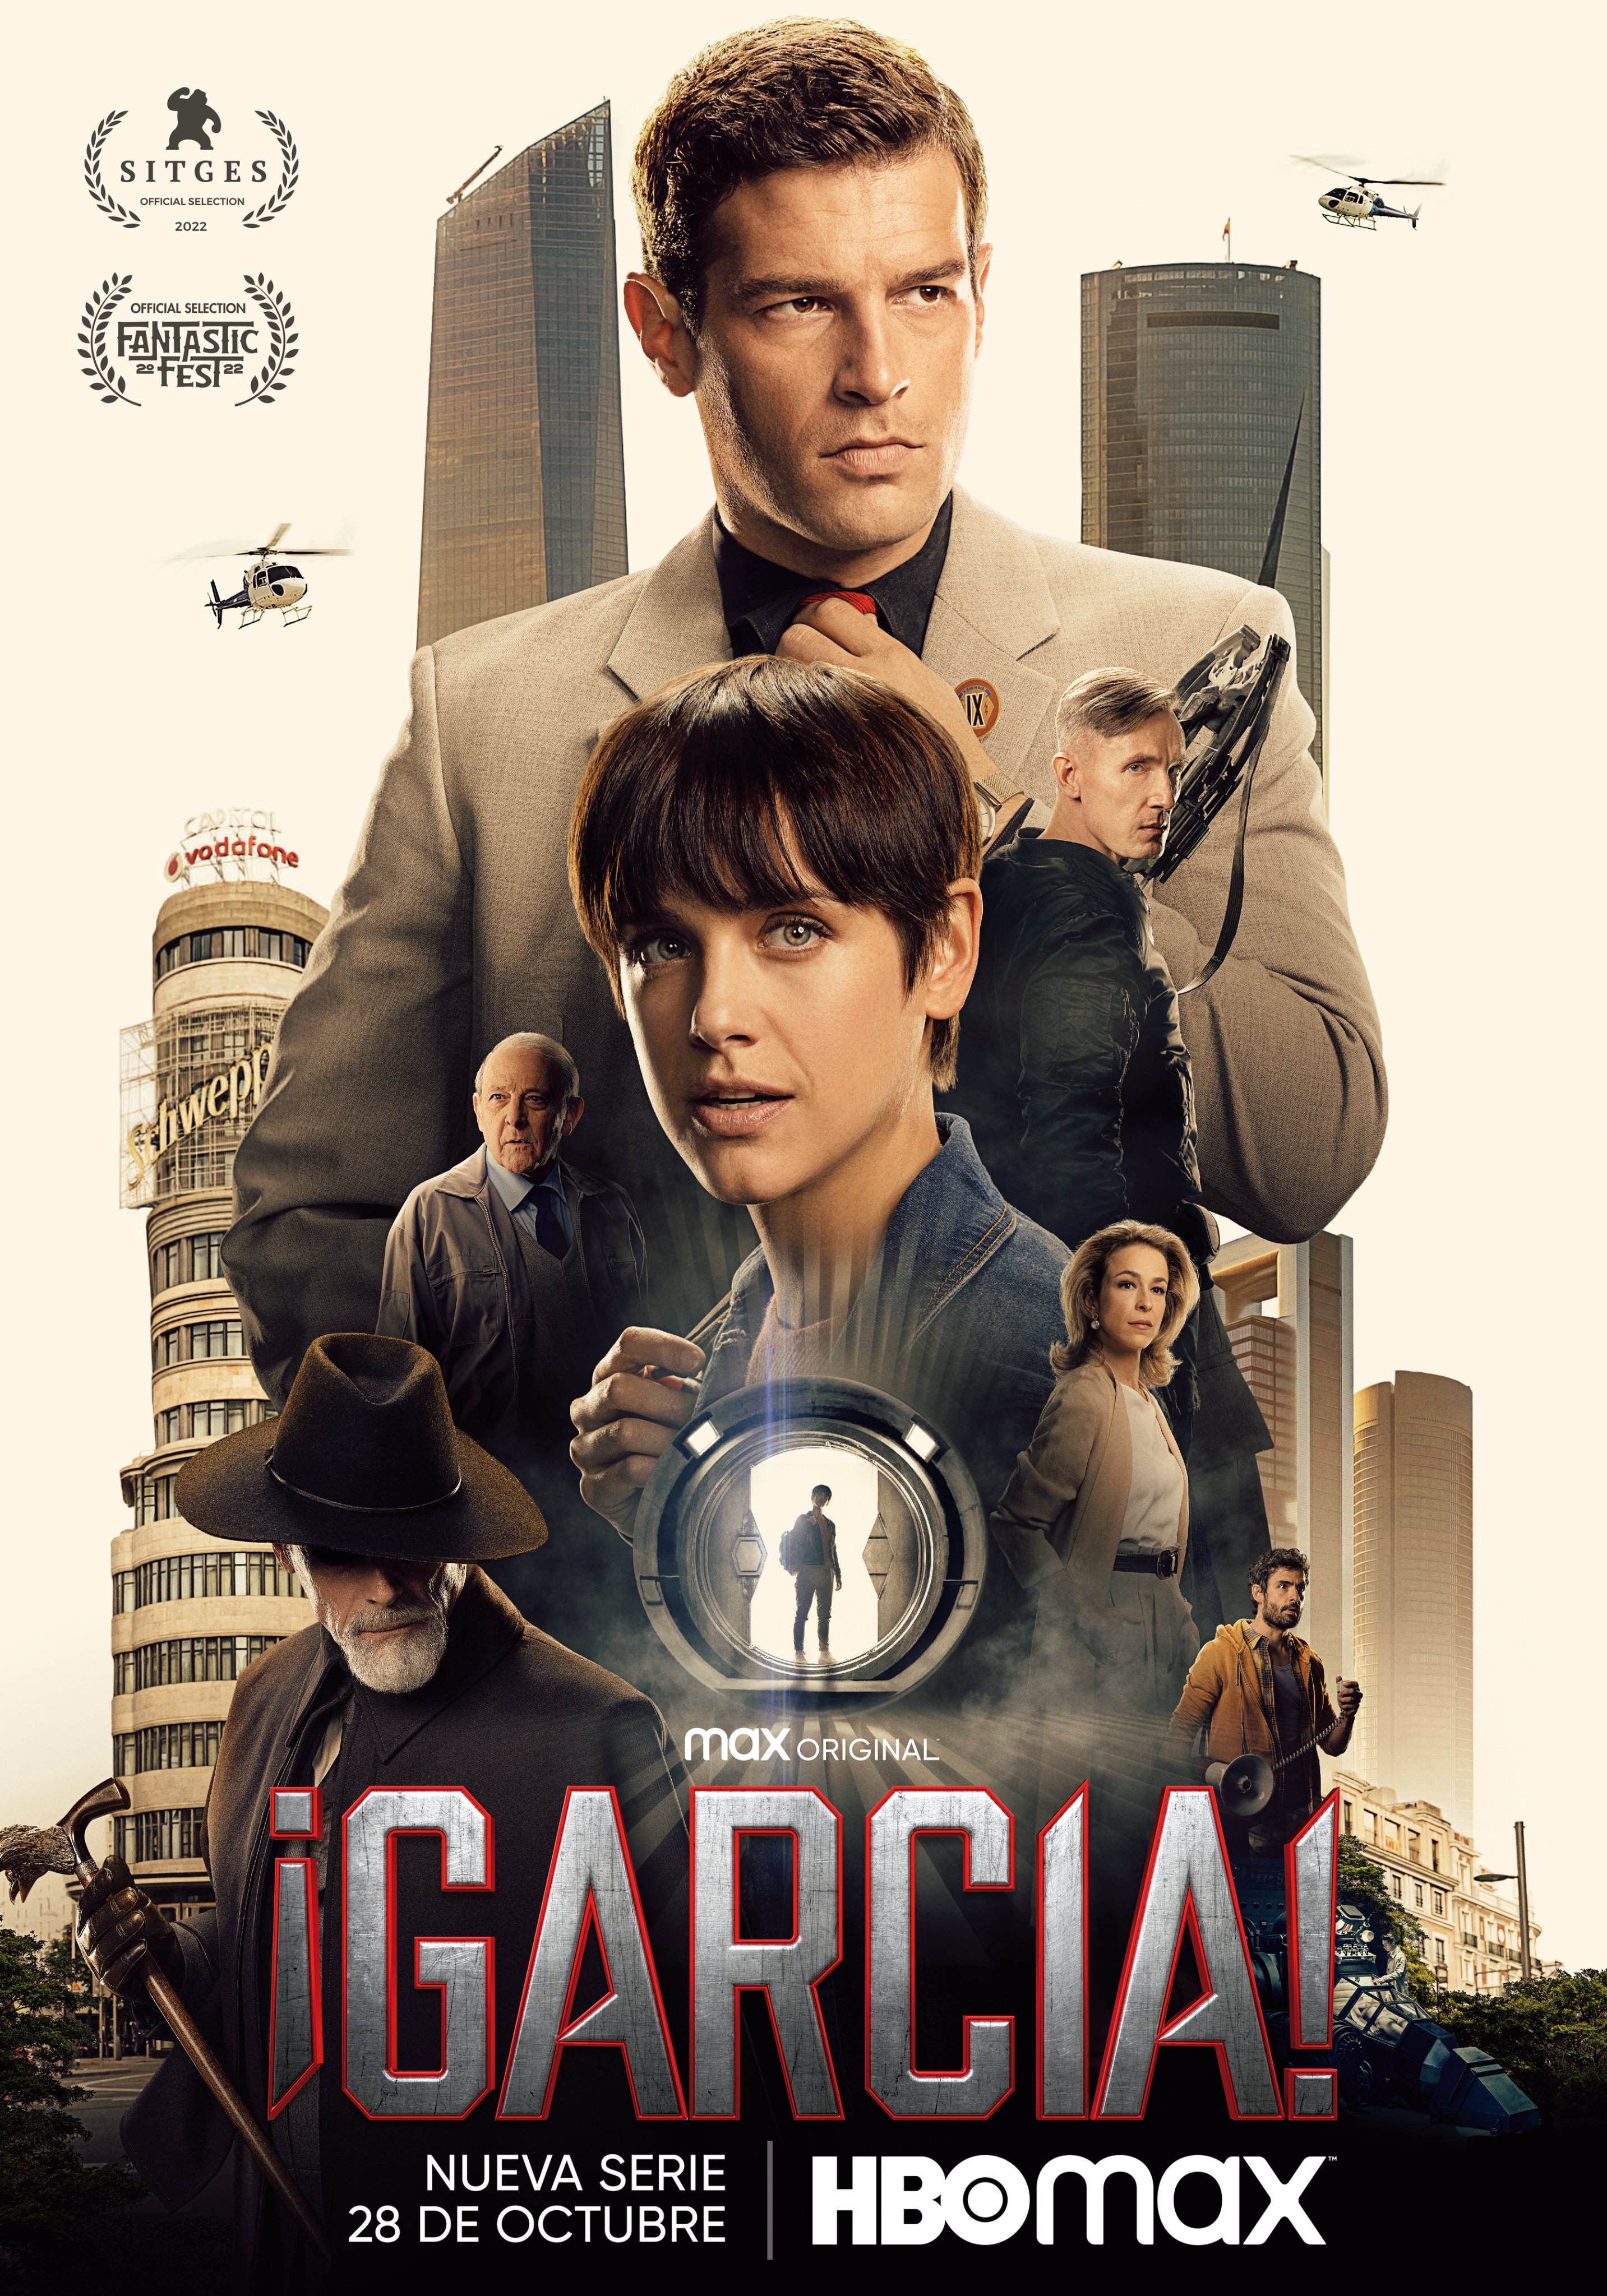 García! Season 1 Episode 2